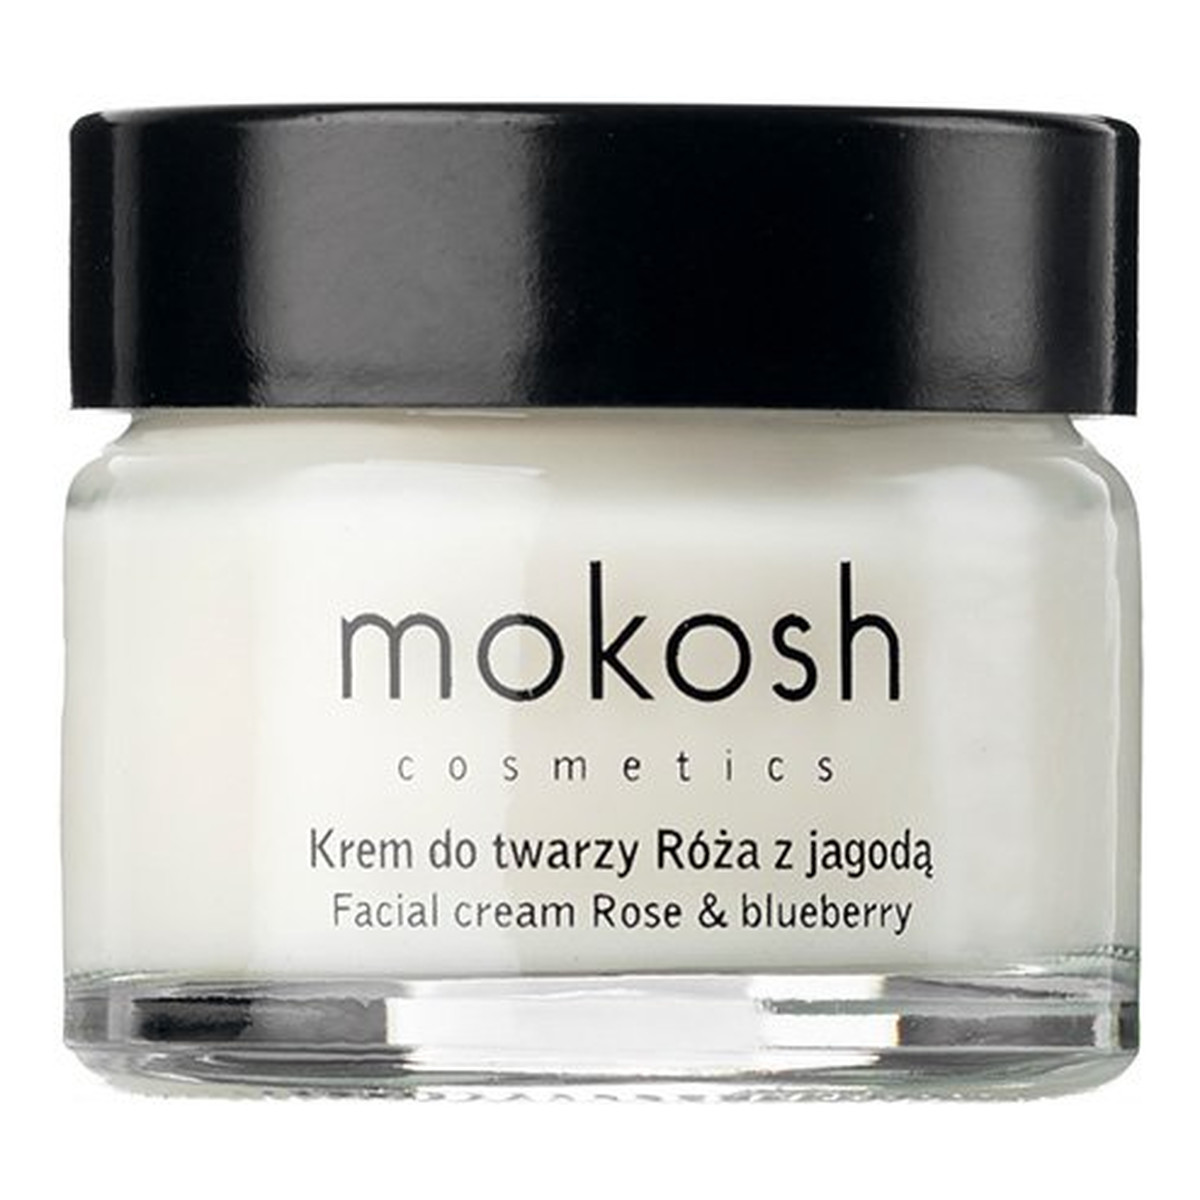 Mokosh Facial Cream Anti-aging Rose & Bluberry ujędrniający Krem do twarzy anti-aging róża z jagodą 15ml